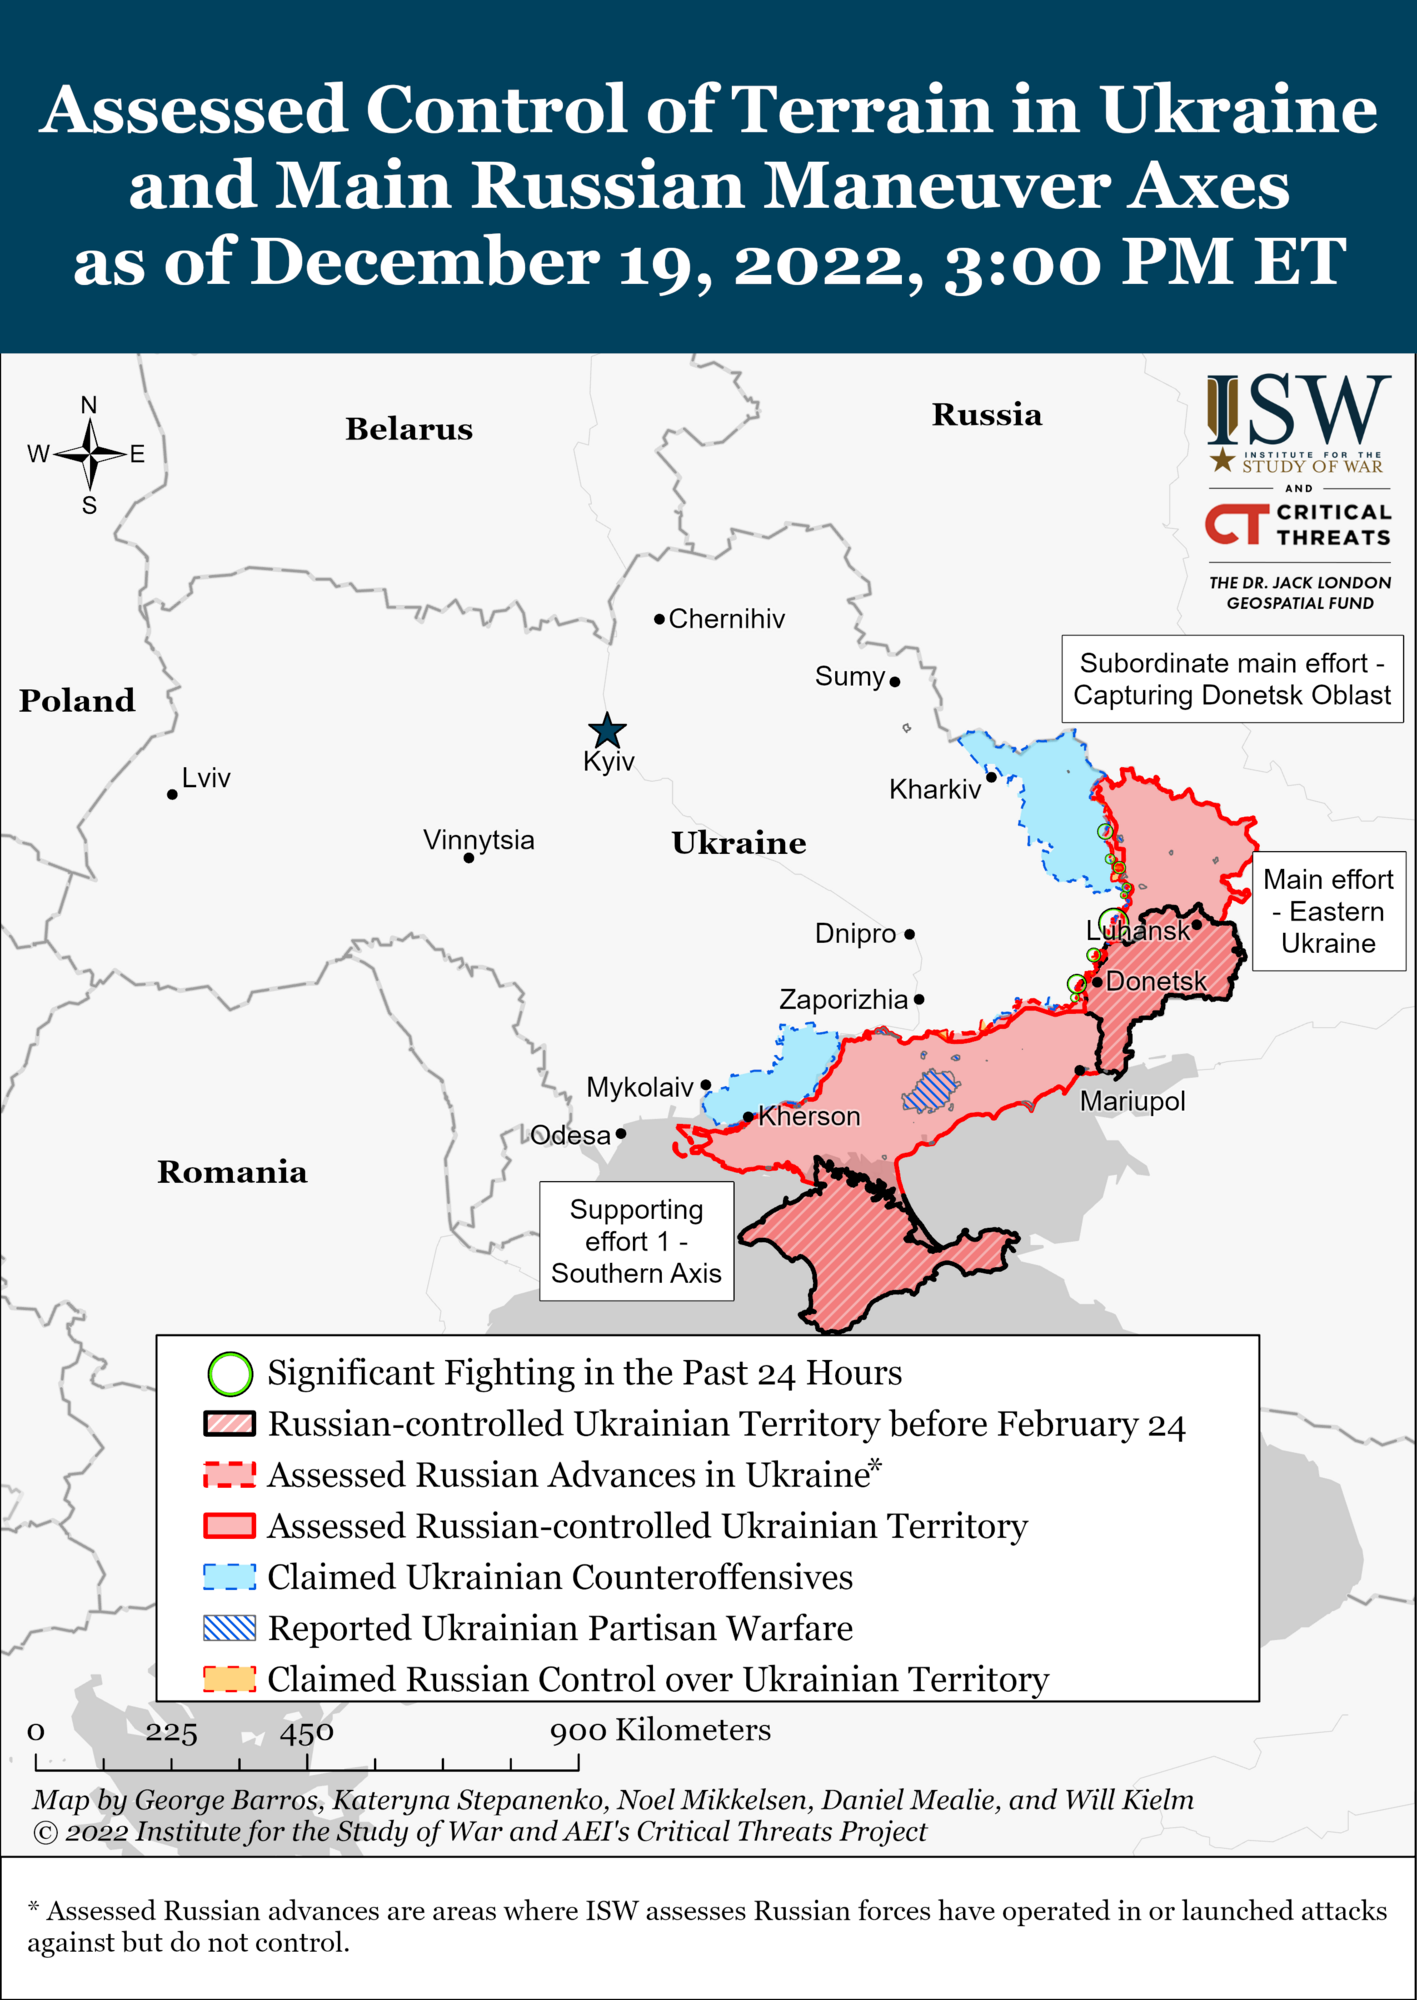 Карта войны в Украине